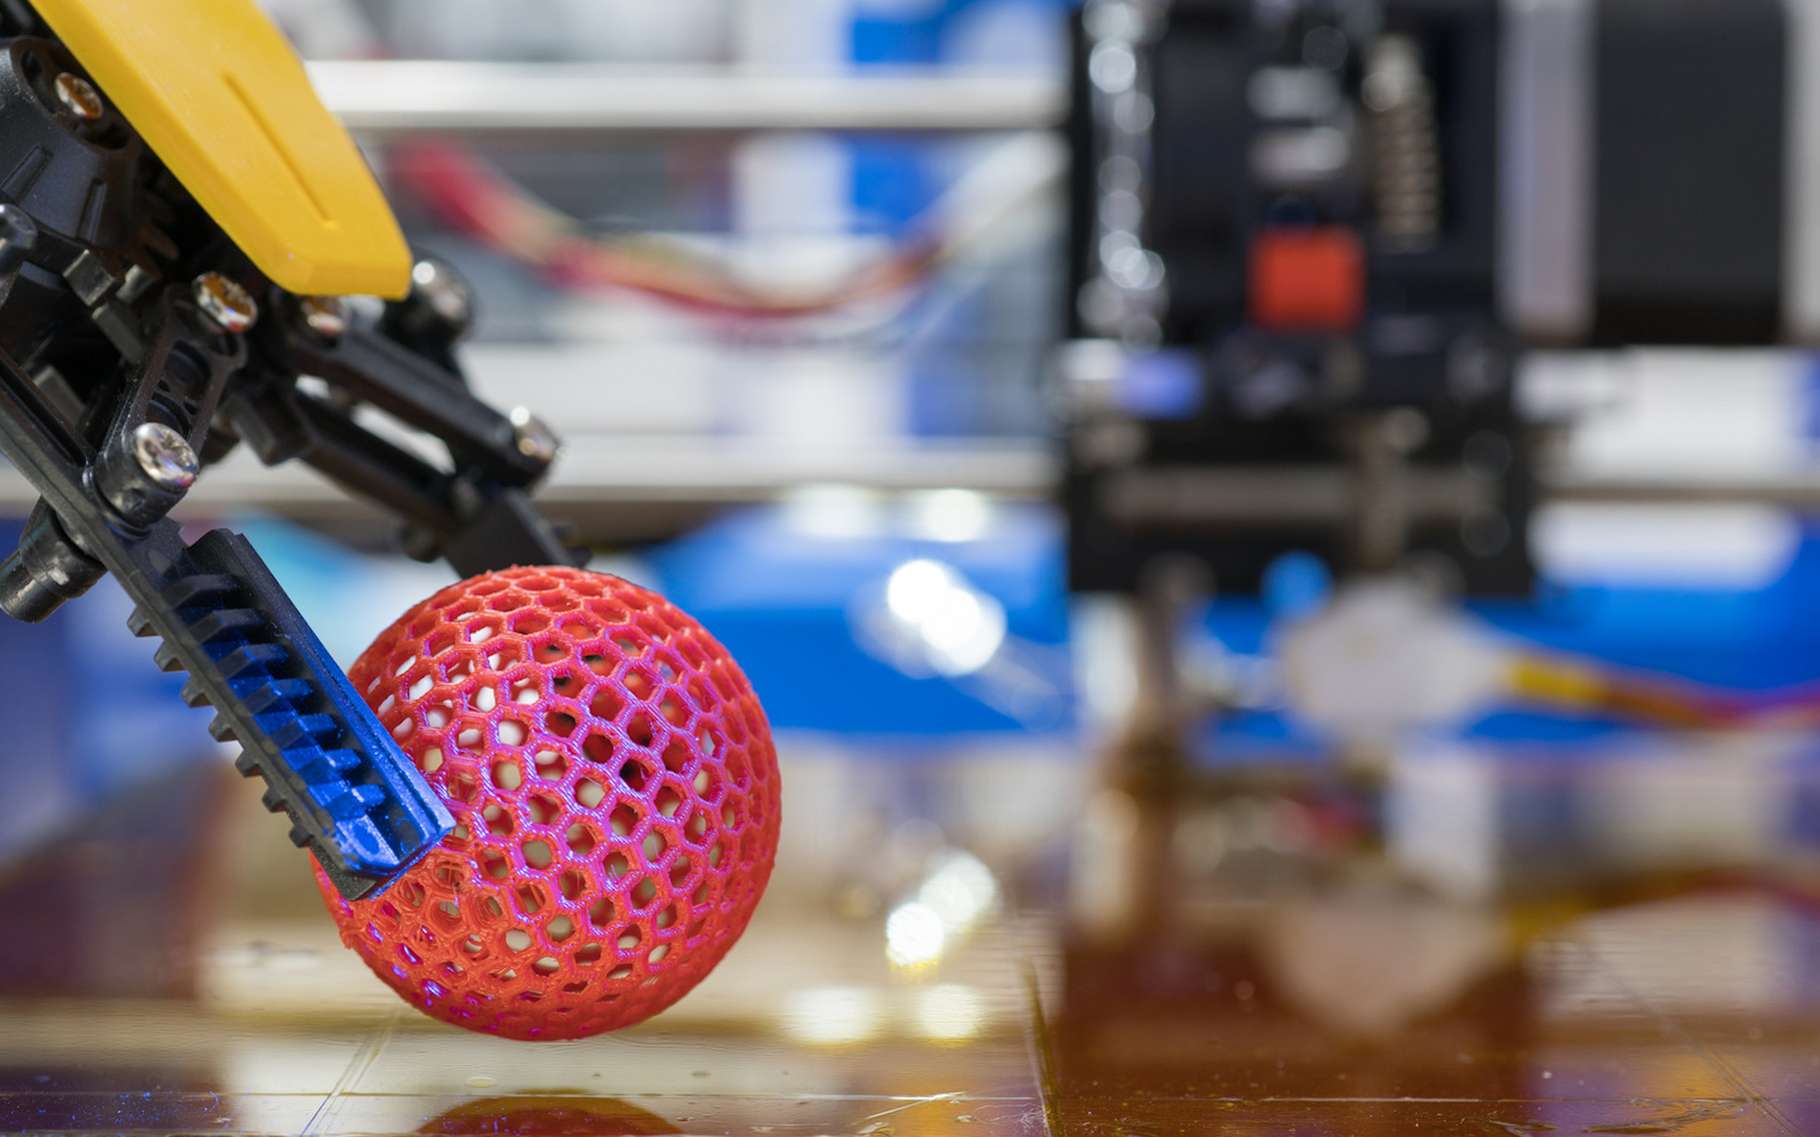 Les makers s'appuient notamment sur l'impression 3D et la fabrication additive. © science photo, Adobe Stock